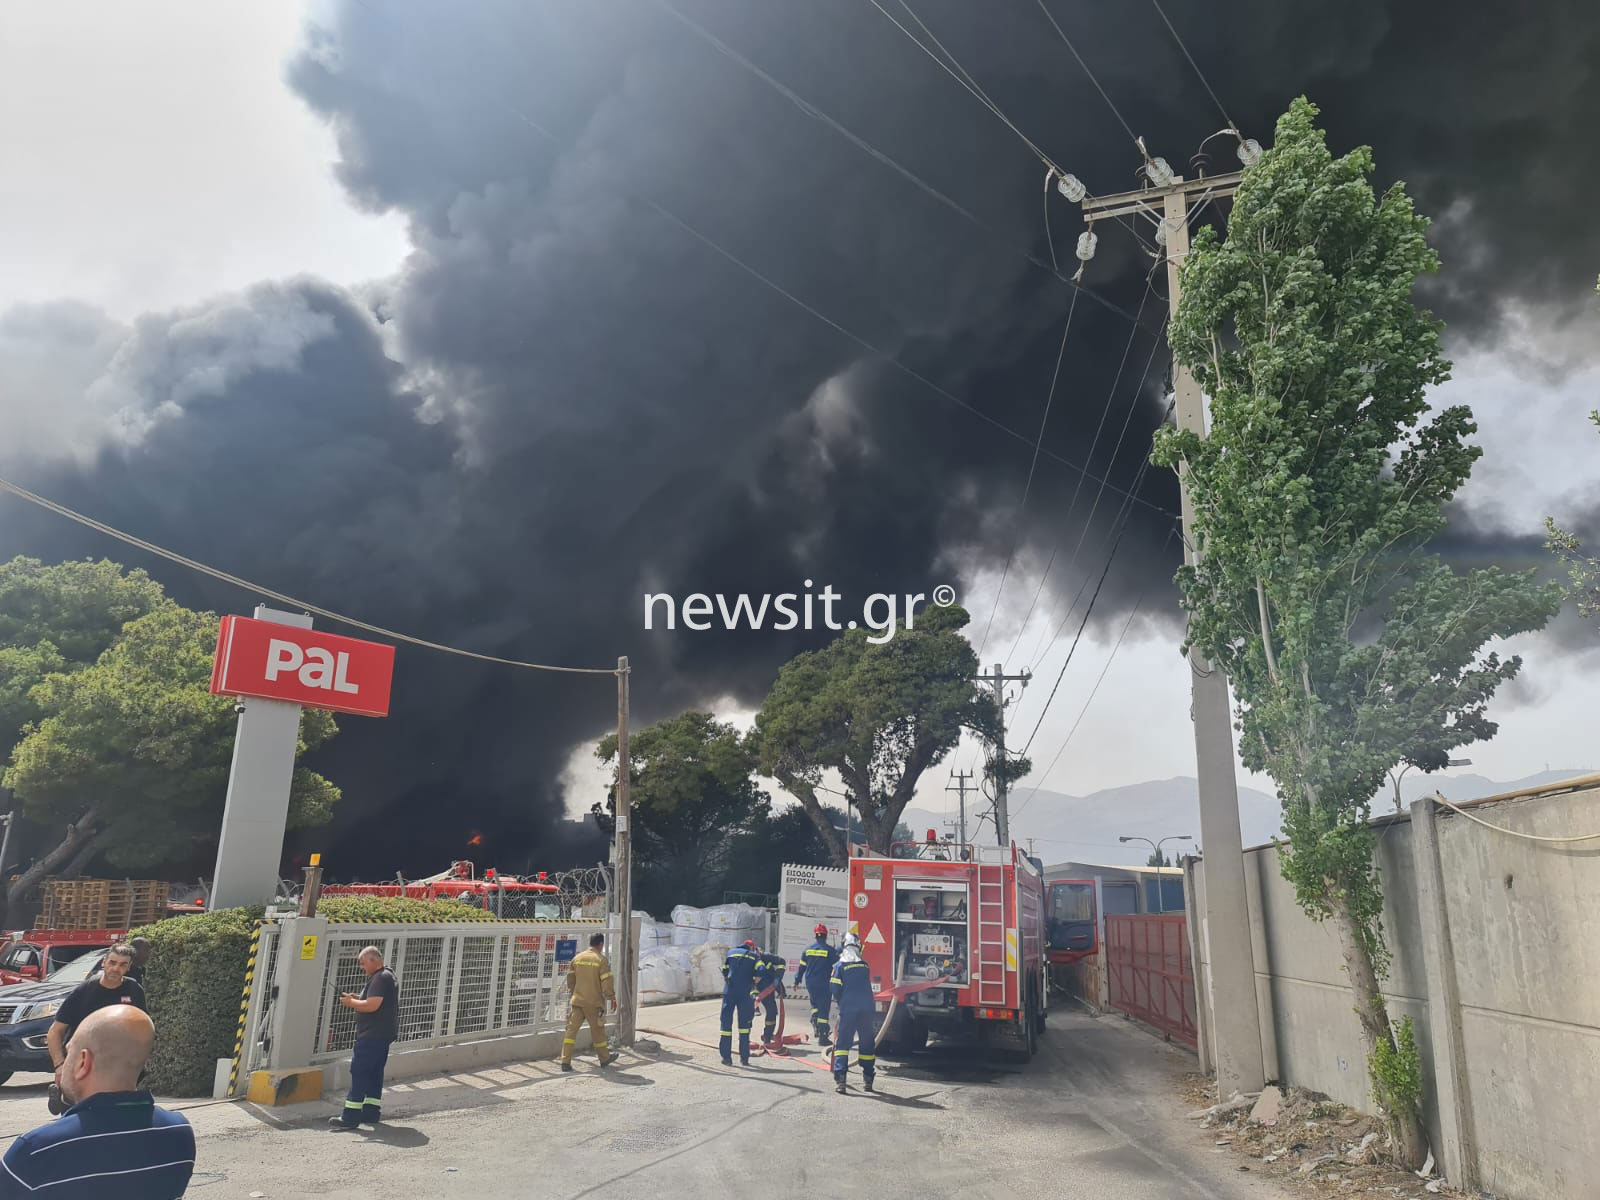 Φωτιά σε εργοστάσιο στην Κηφισιά: Οδηγία στο νοσοκομείο Άγιοι Ανάργυροι να κλείσουν όλα τα παράθυρα